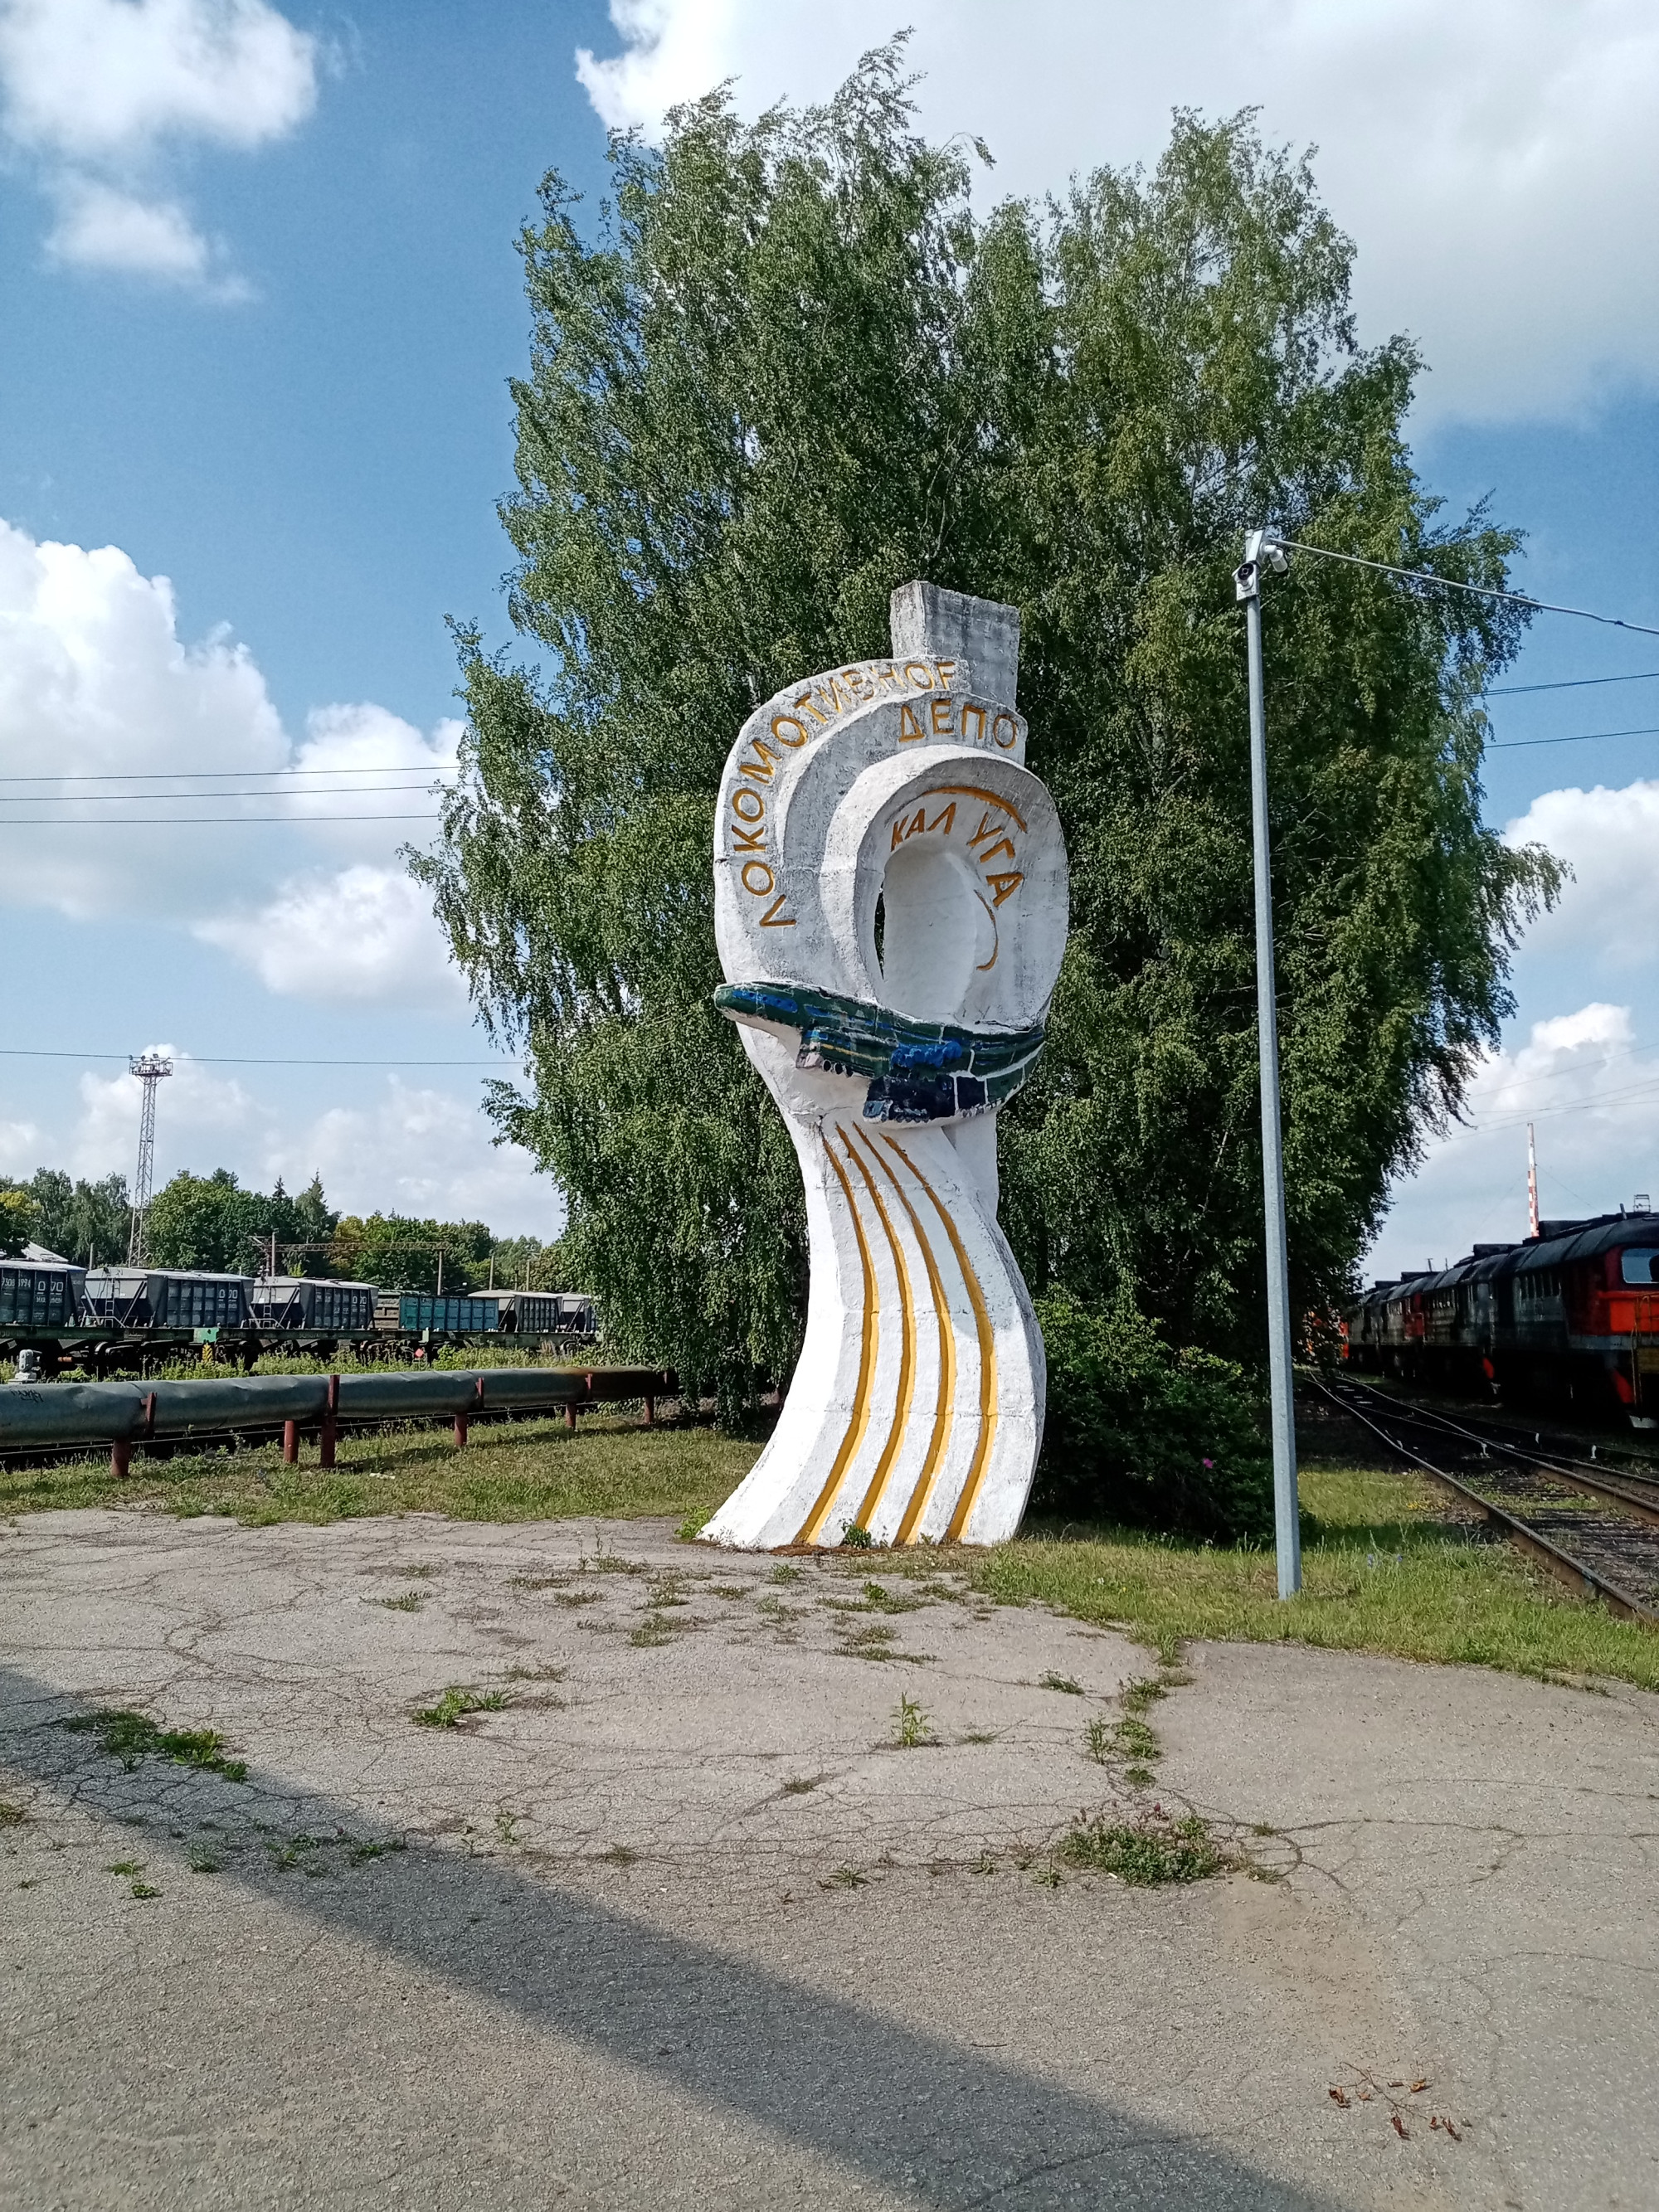 Локомотивное депо Калуга, Russia